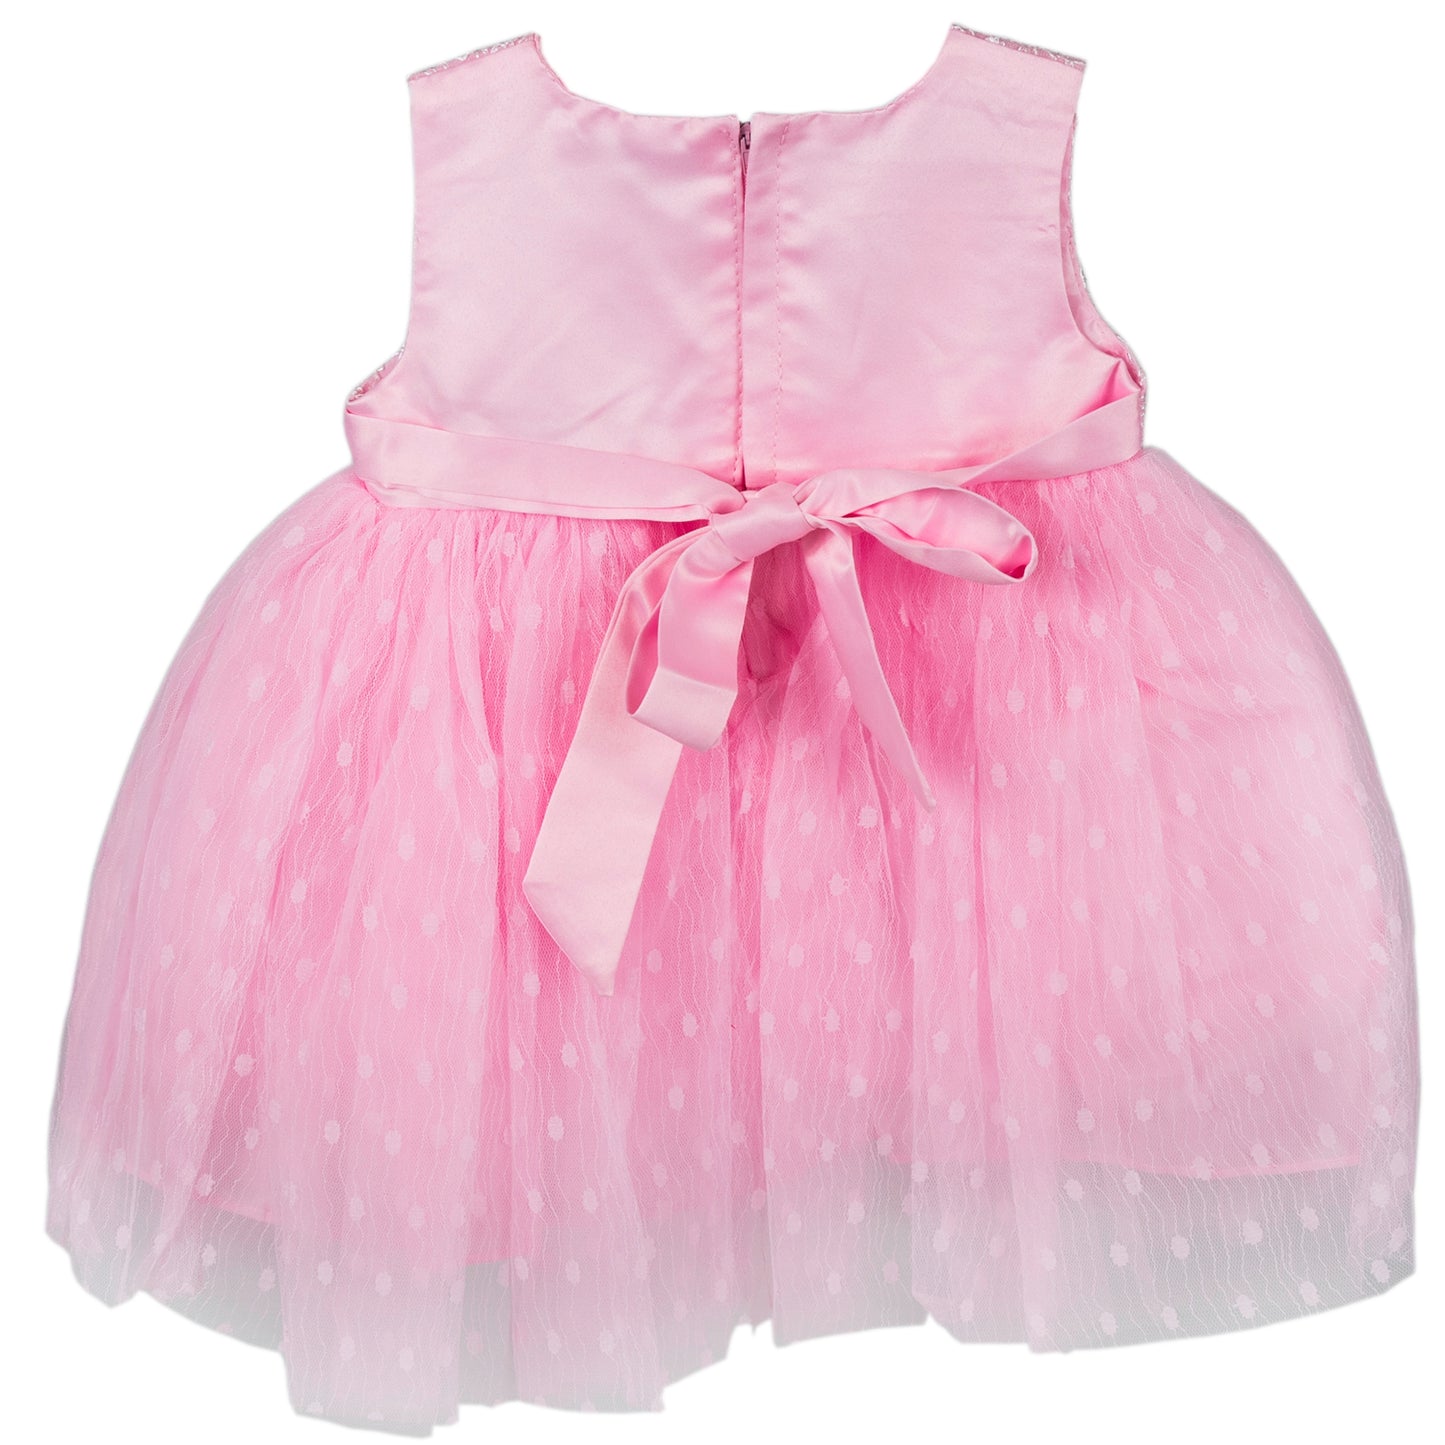 Pink Princess Dress (3-6 months)